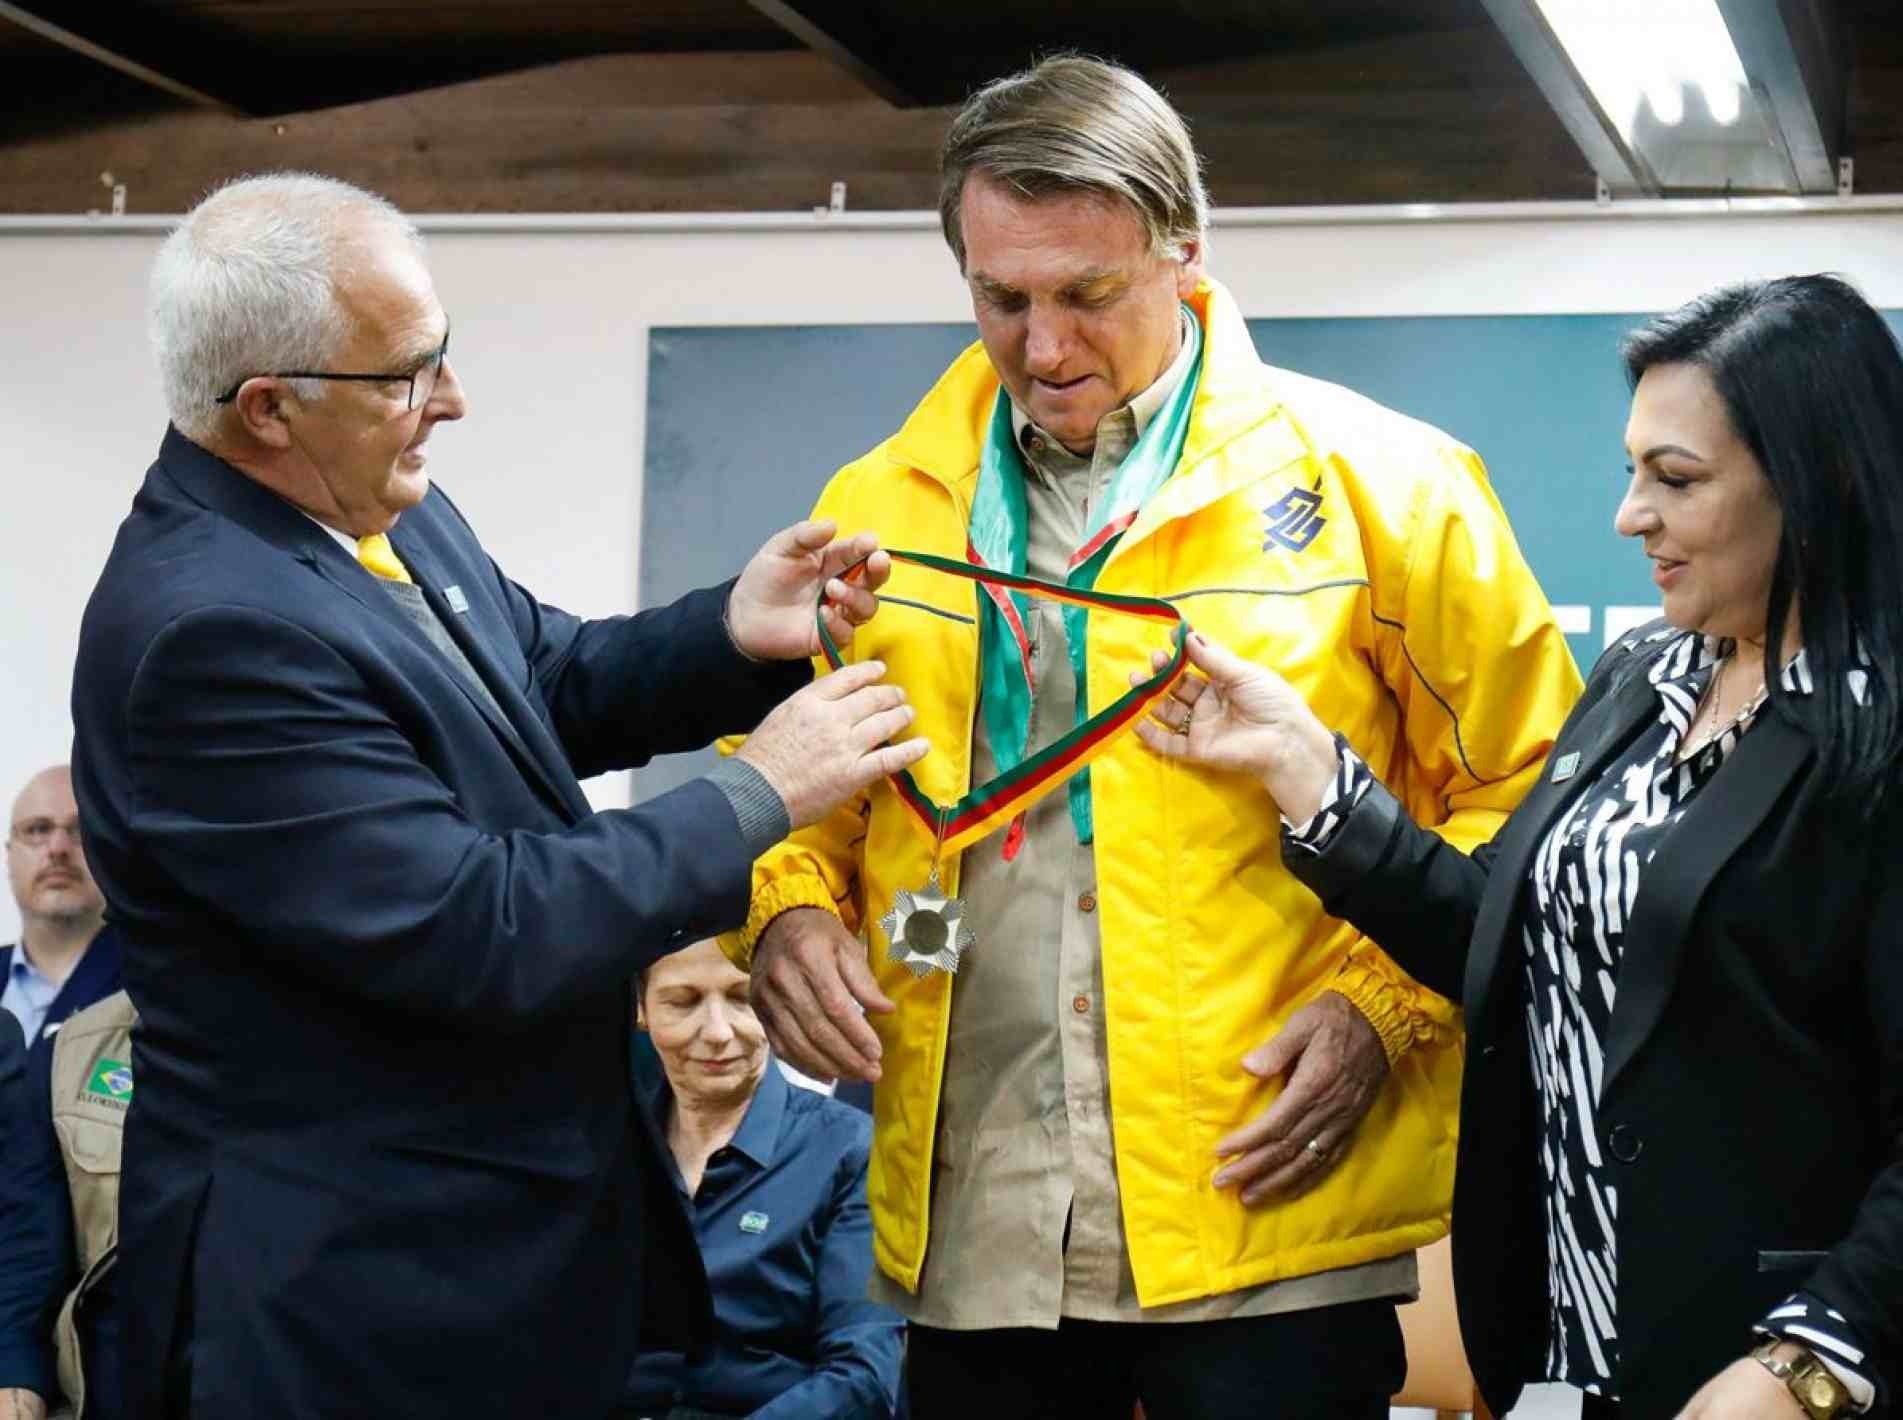 Presidente recebeu Medalha do Mérito Farroupilha.